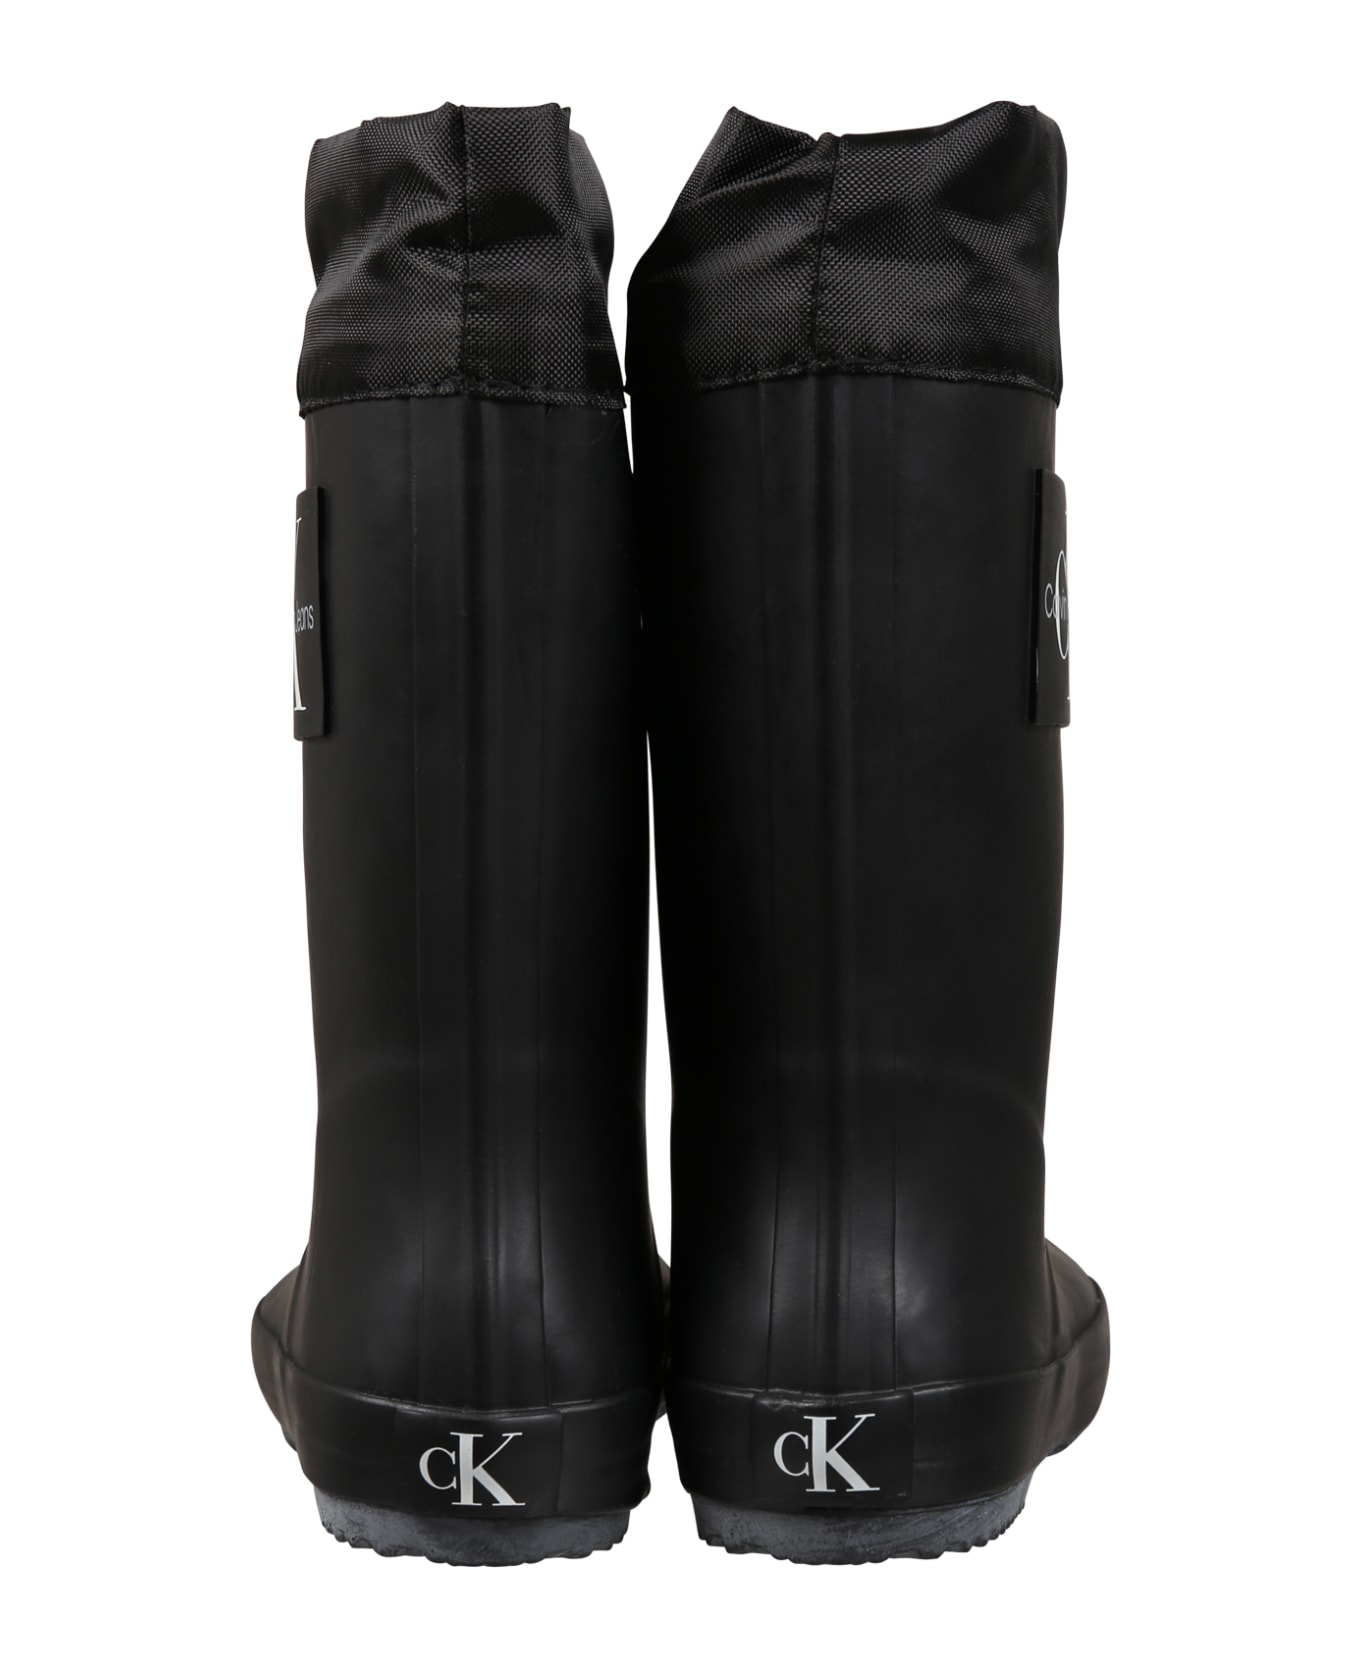 Calvin Klein Black Boots For Girl - Black